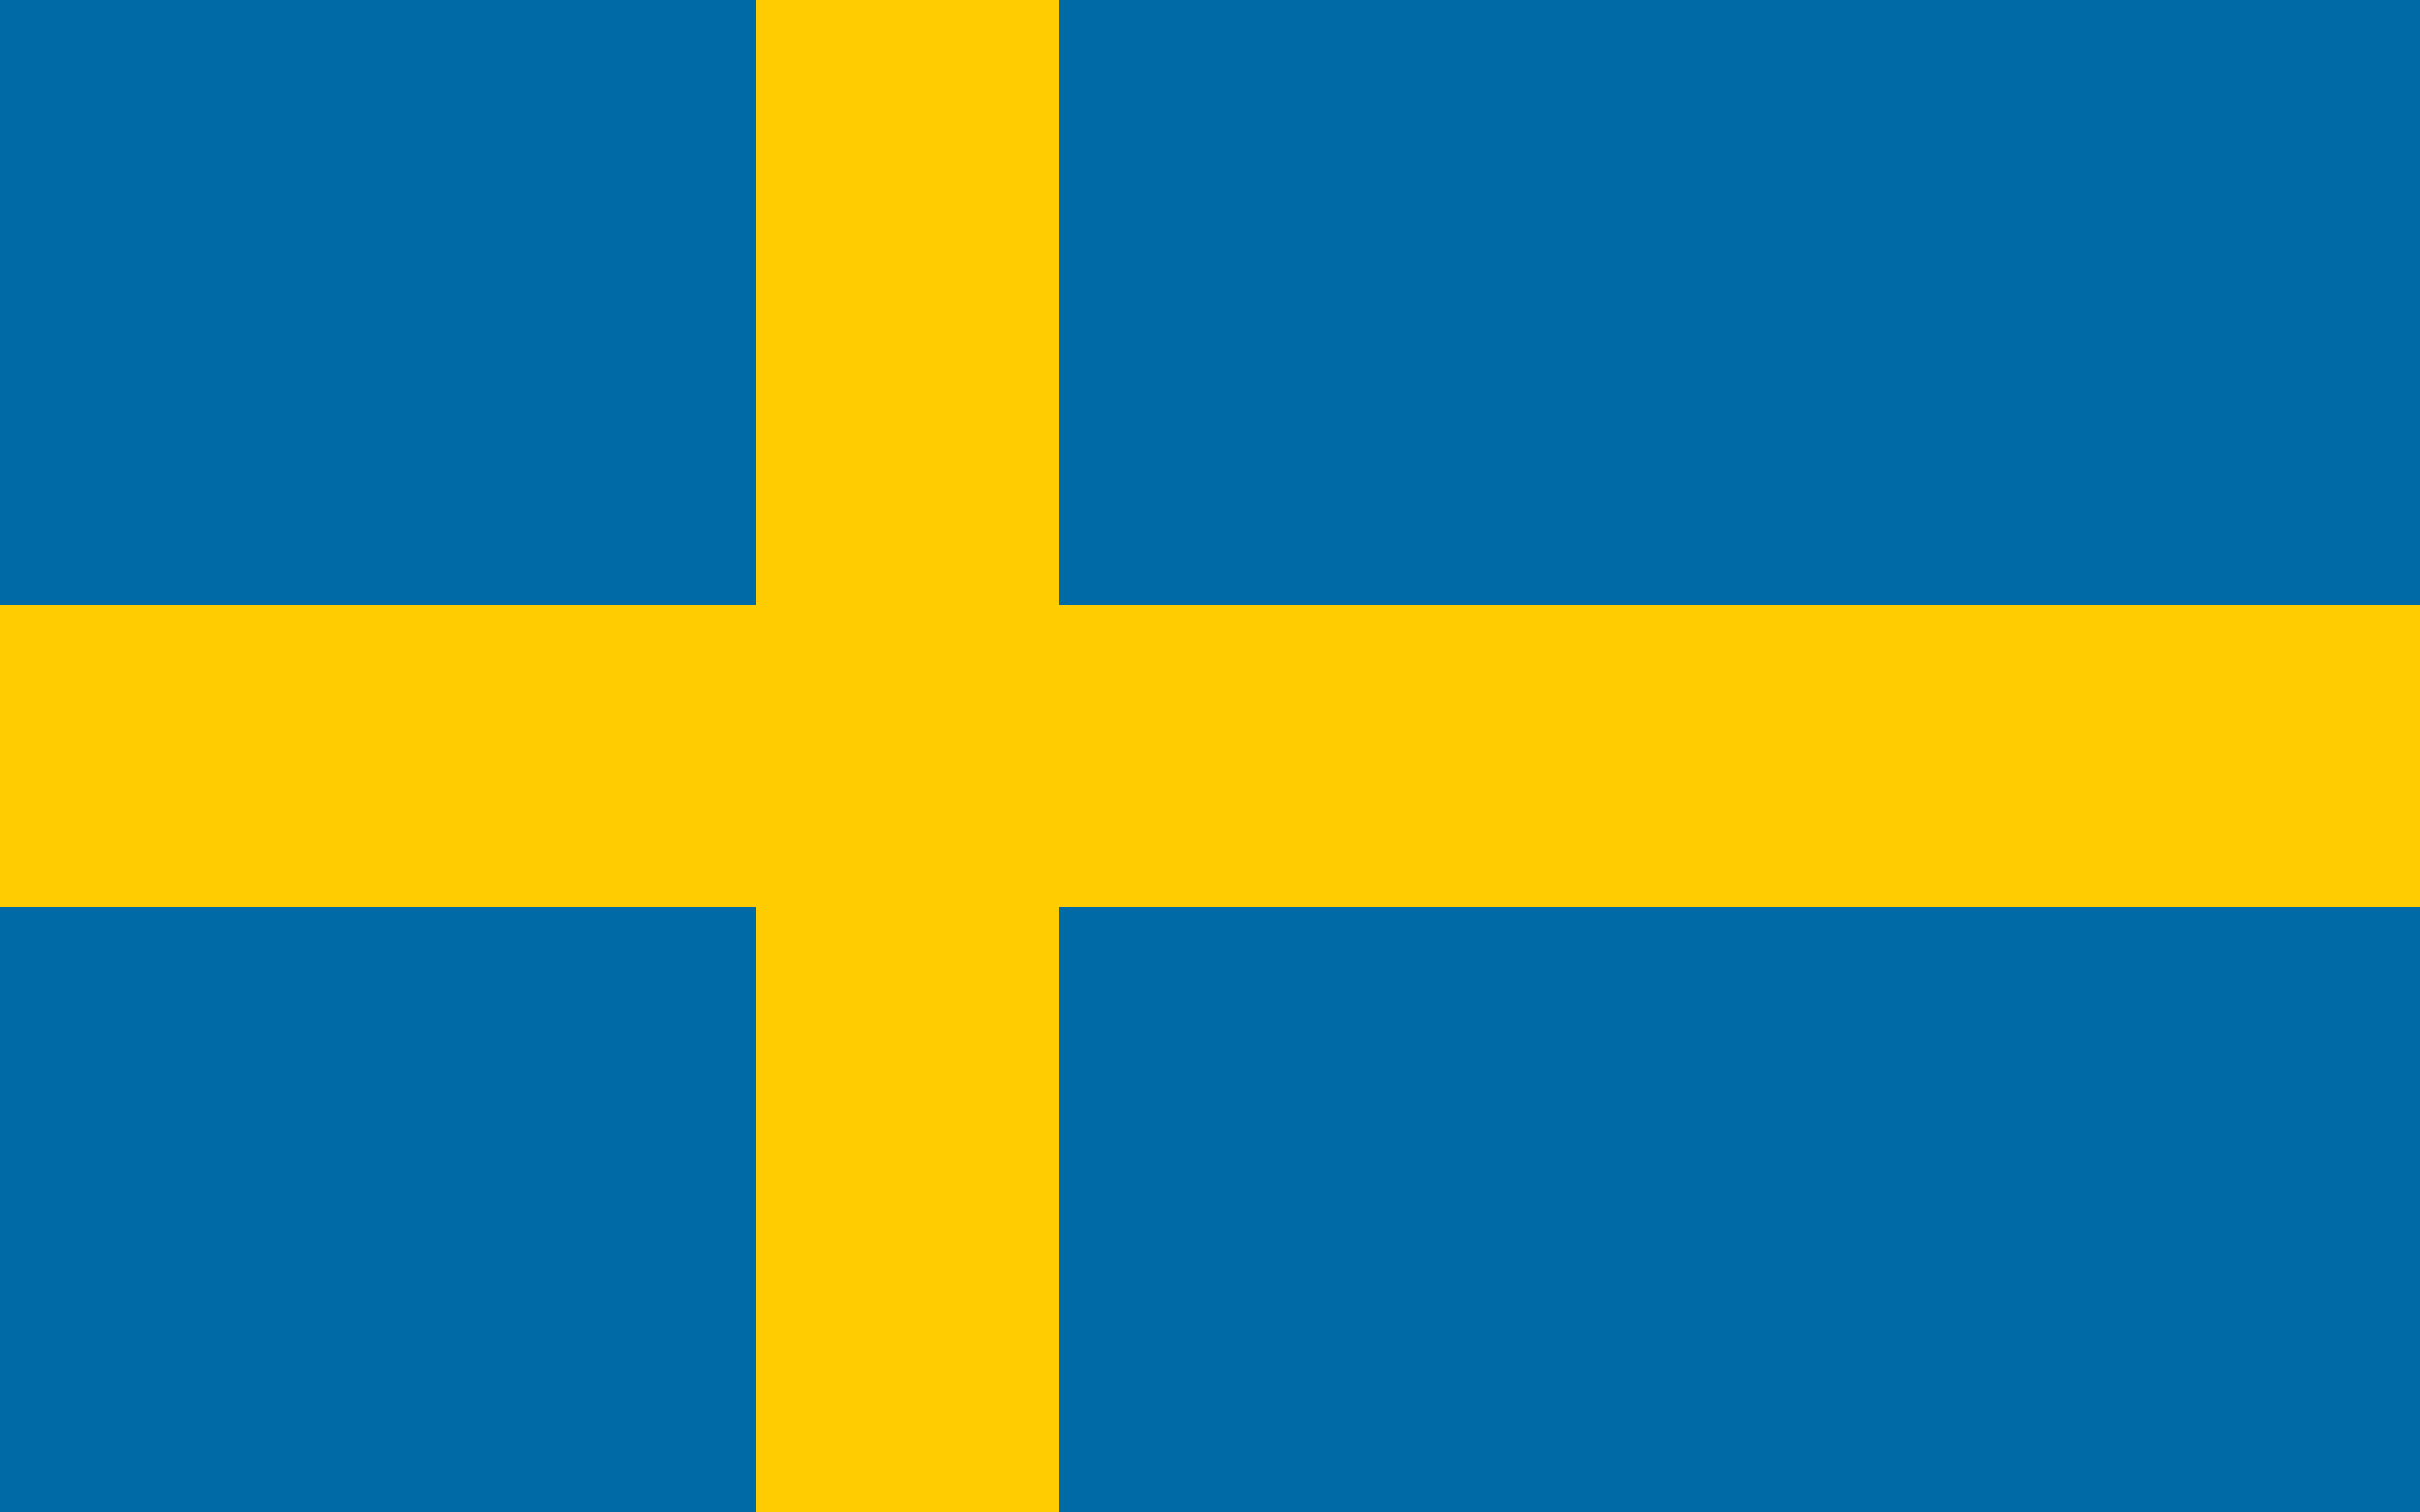 Eurovision Song Contest 2024 in Svezia, 8 le città candidate a ospitare l’evento musicale più amato al mondo. Potrebbe essere l’anno della riscossa per San Marino?